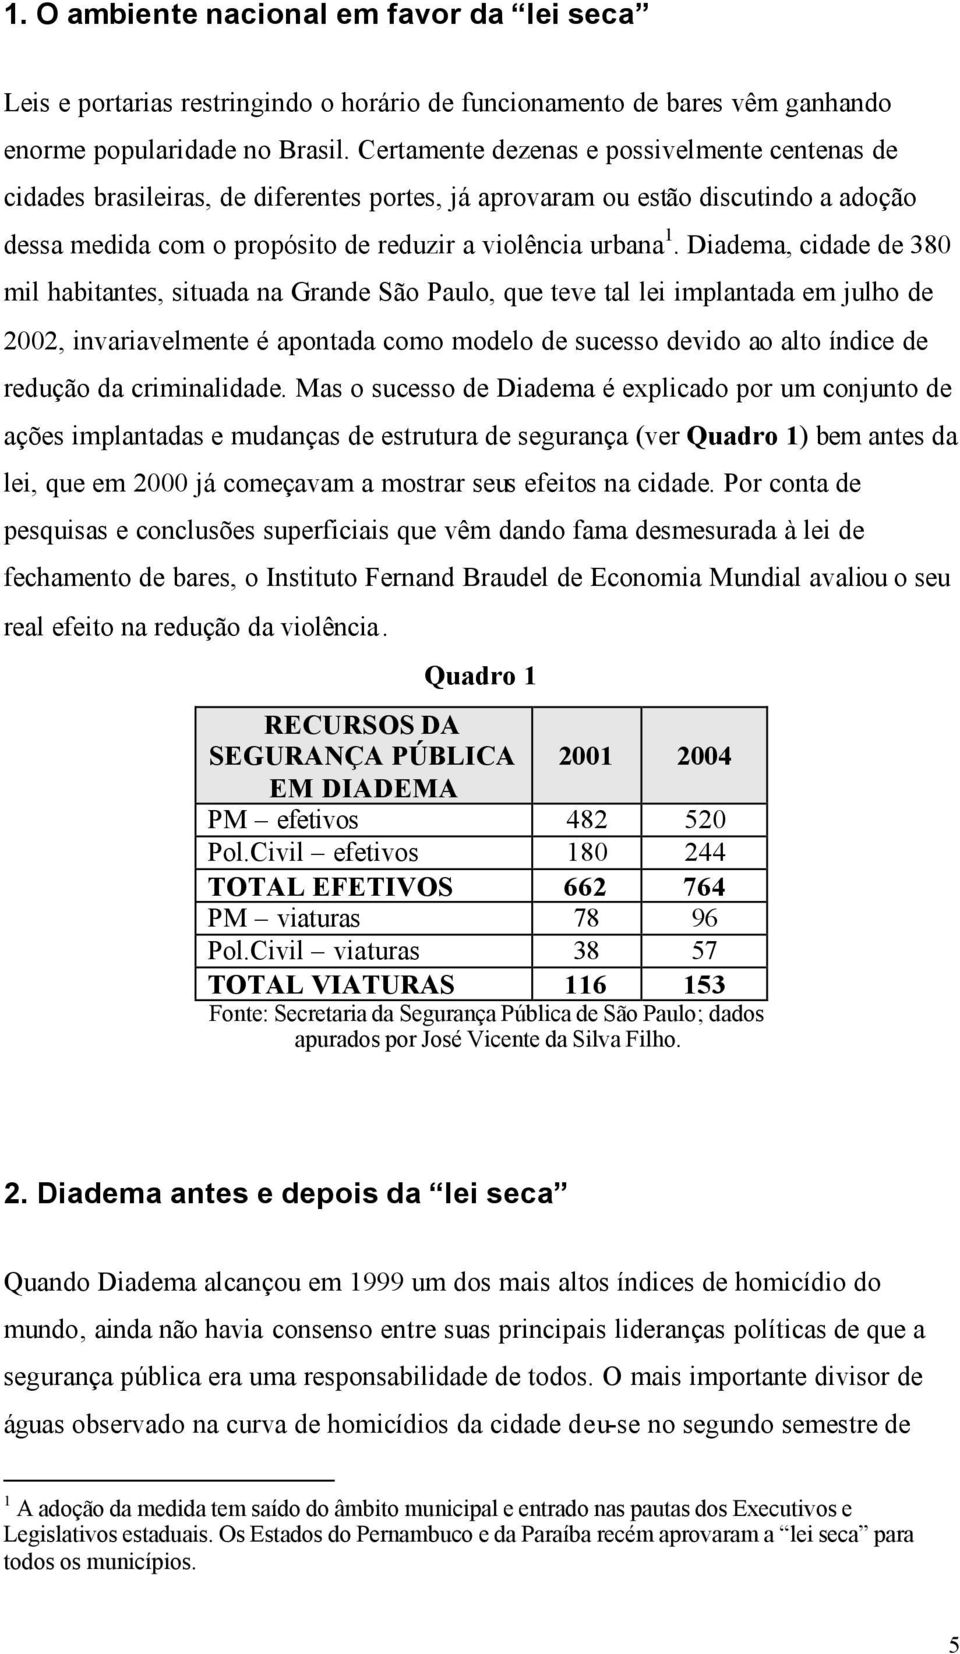 Diadema, cidade de 380 mil habitantes, situada na Grande São Paulo, que teve tal lei implantada em julho de 2002, invariavelmente é apontada como modelo de sucesso devido ao alto índice de redução da